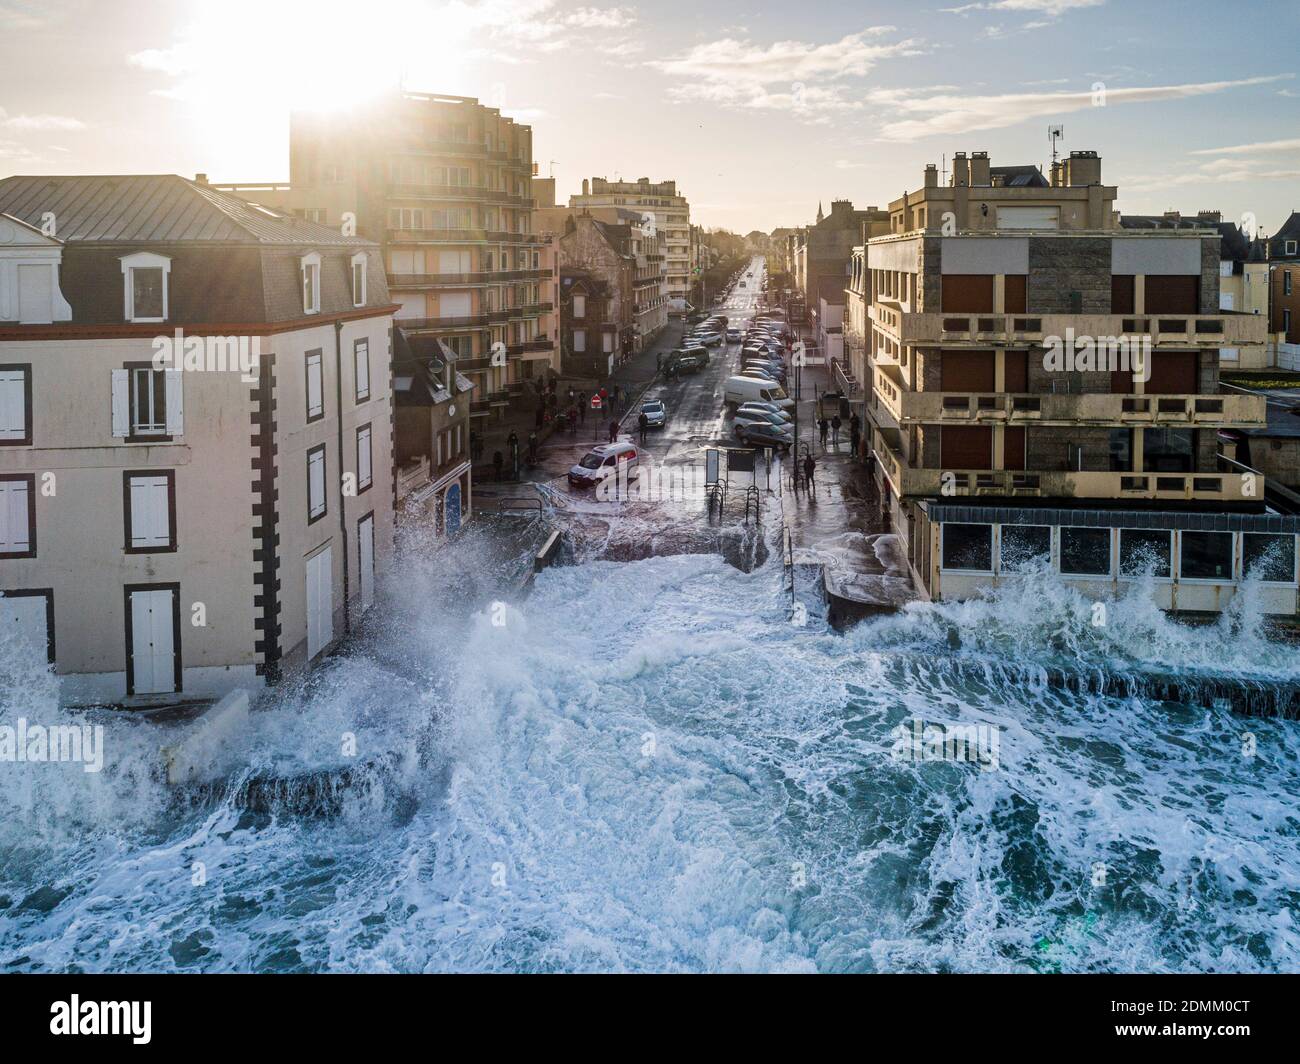 Saint-Malo (Bretagne, Nord-Ouest de la France), le 12 février 2020 : marée et tempête printanières Ciara en Bretagne. Vagues se brisant sur les quais le long du wate Banque D'Images